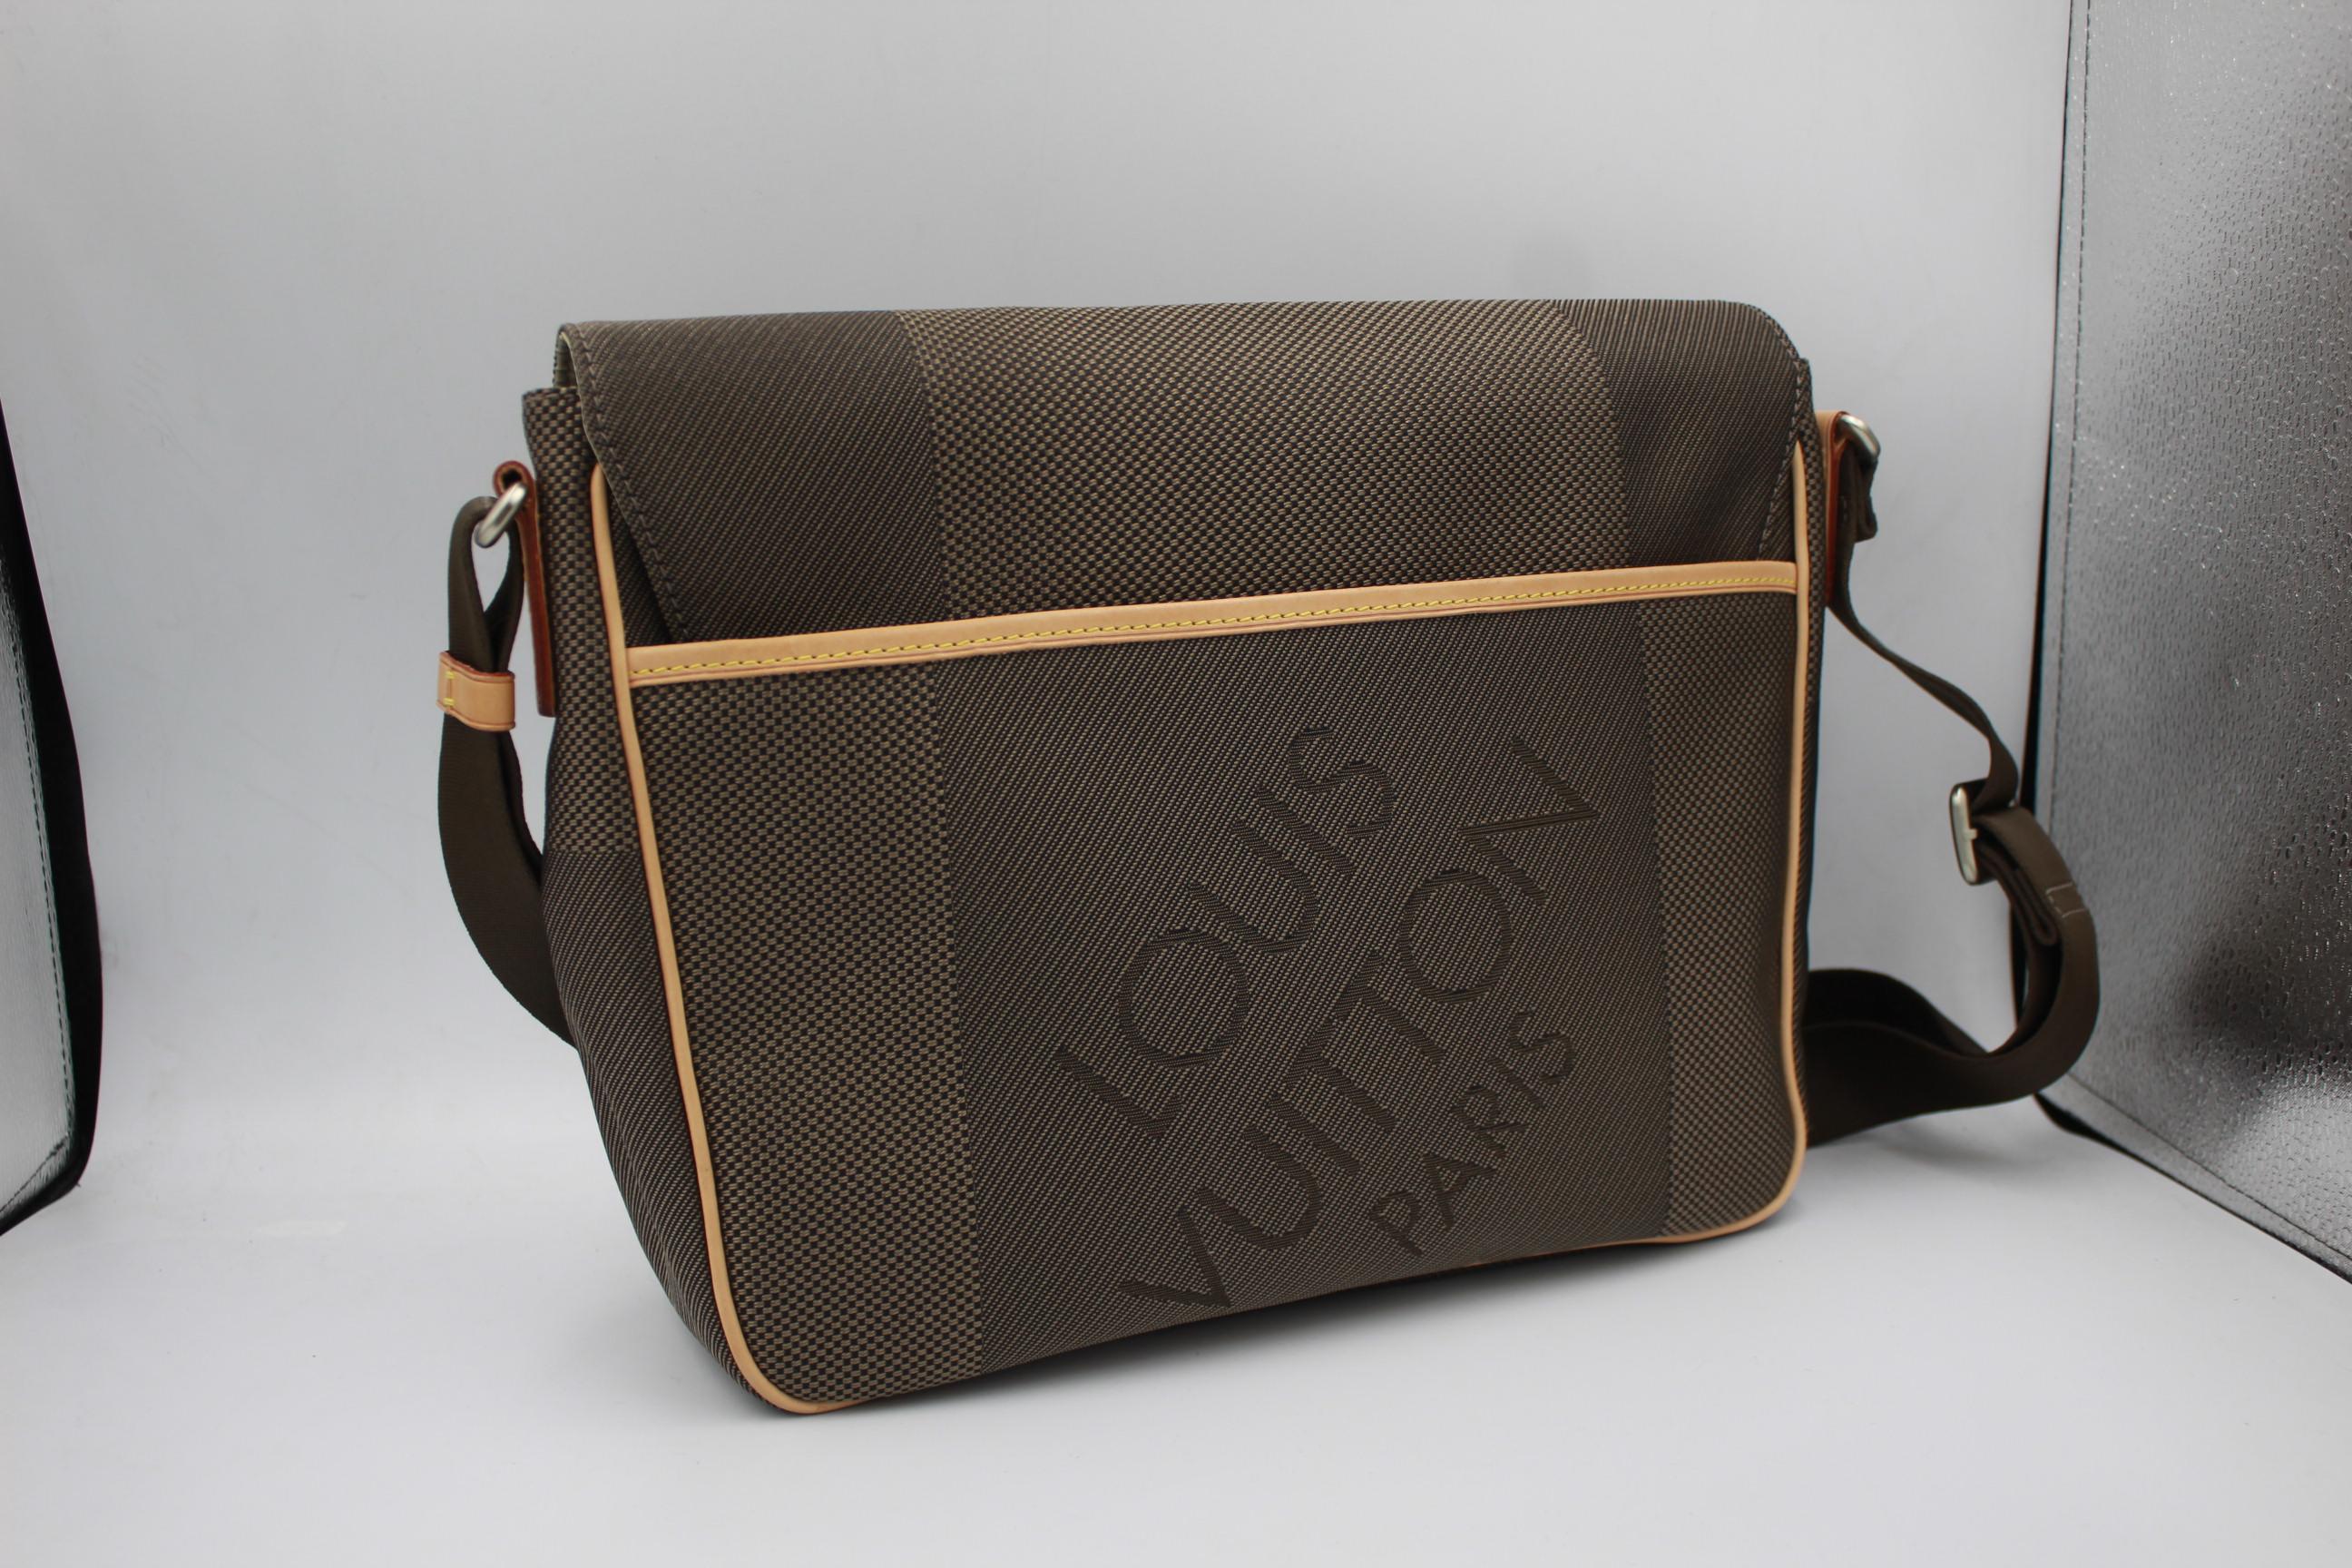 Louis Vuitton Damier Géant satchel Bag
Very good condition, 
30cm x 25cm x 7cm